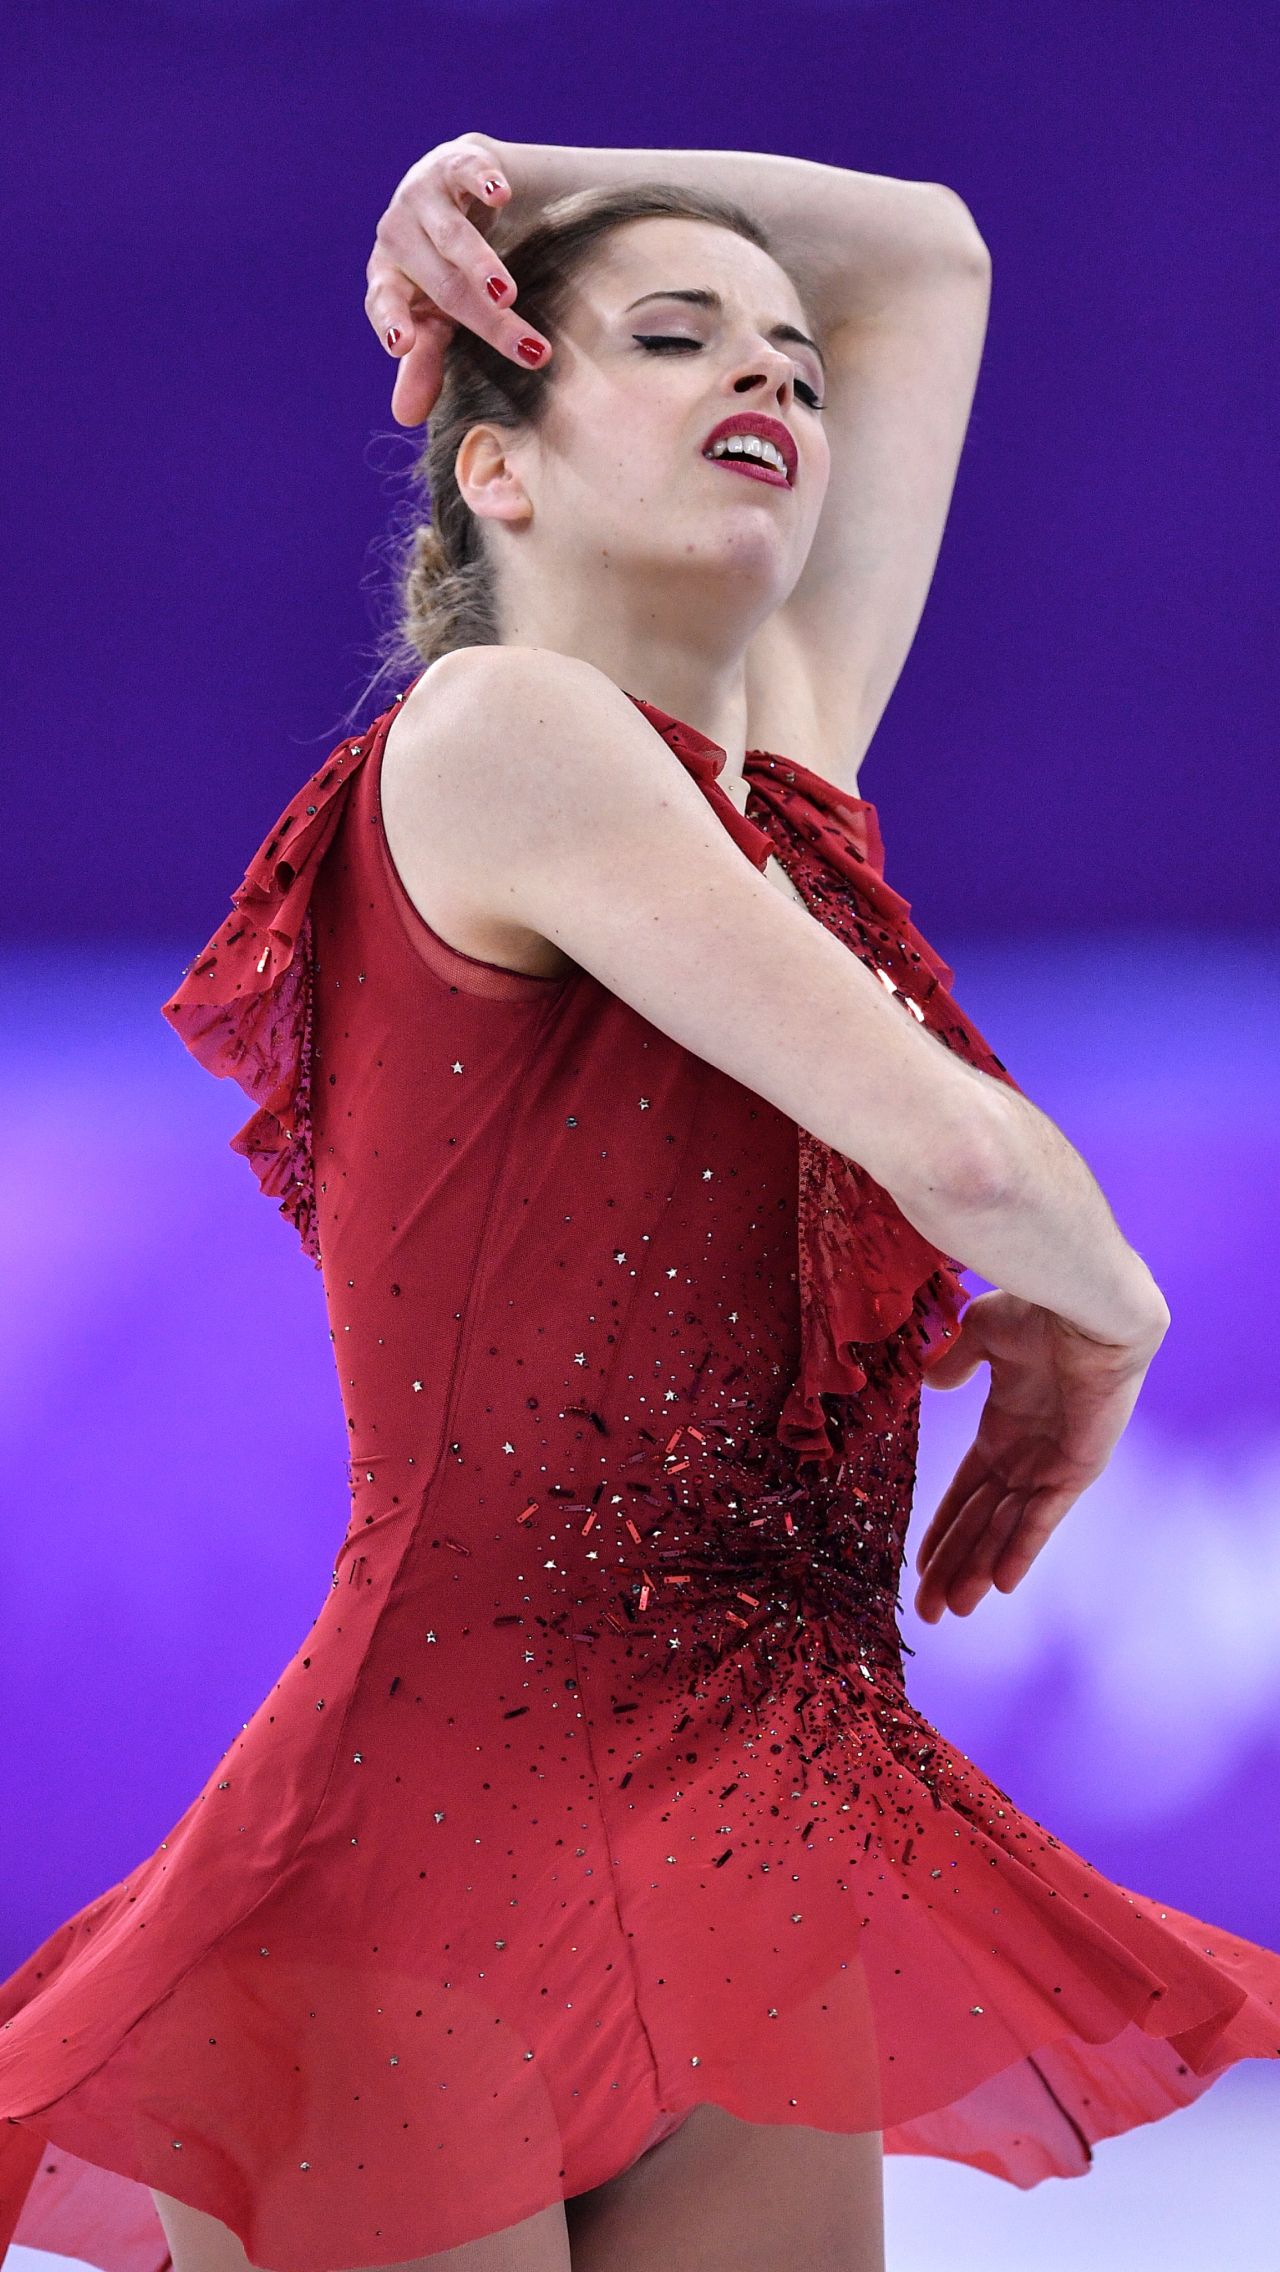 Настоящий восторг у болельщиков вызвало красное платье Каролины от Кавалли для короткой программы олимпийского сезона-2018.